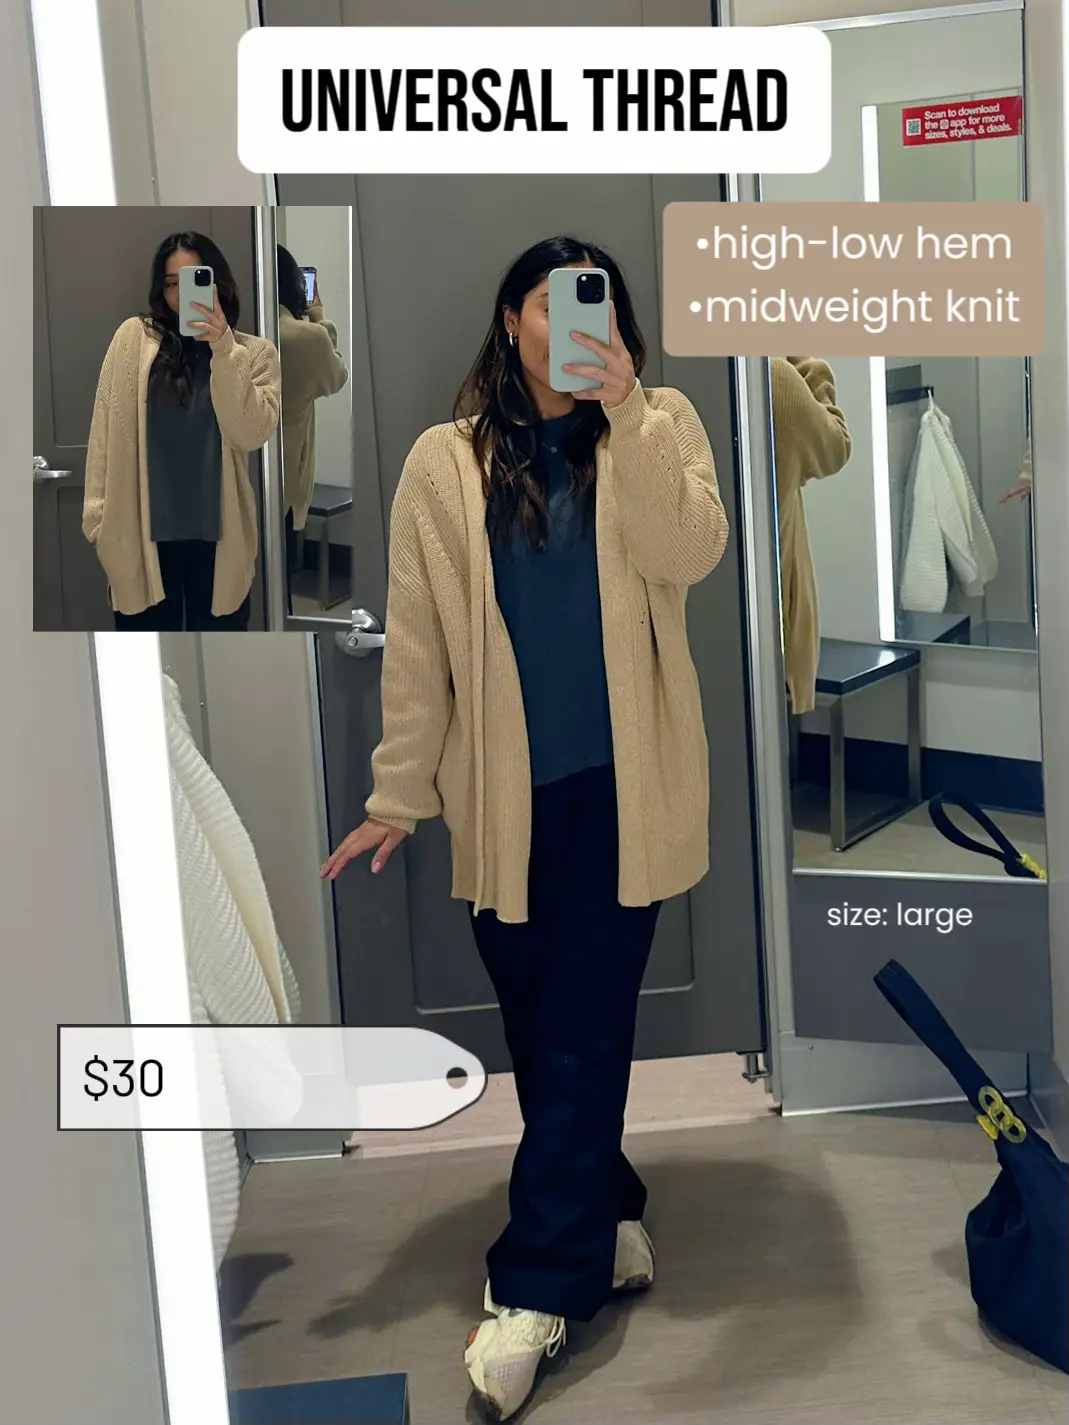  A woman is taking a selfie in a mirror.